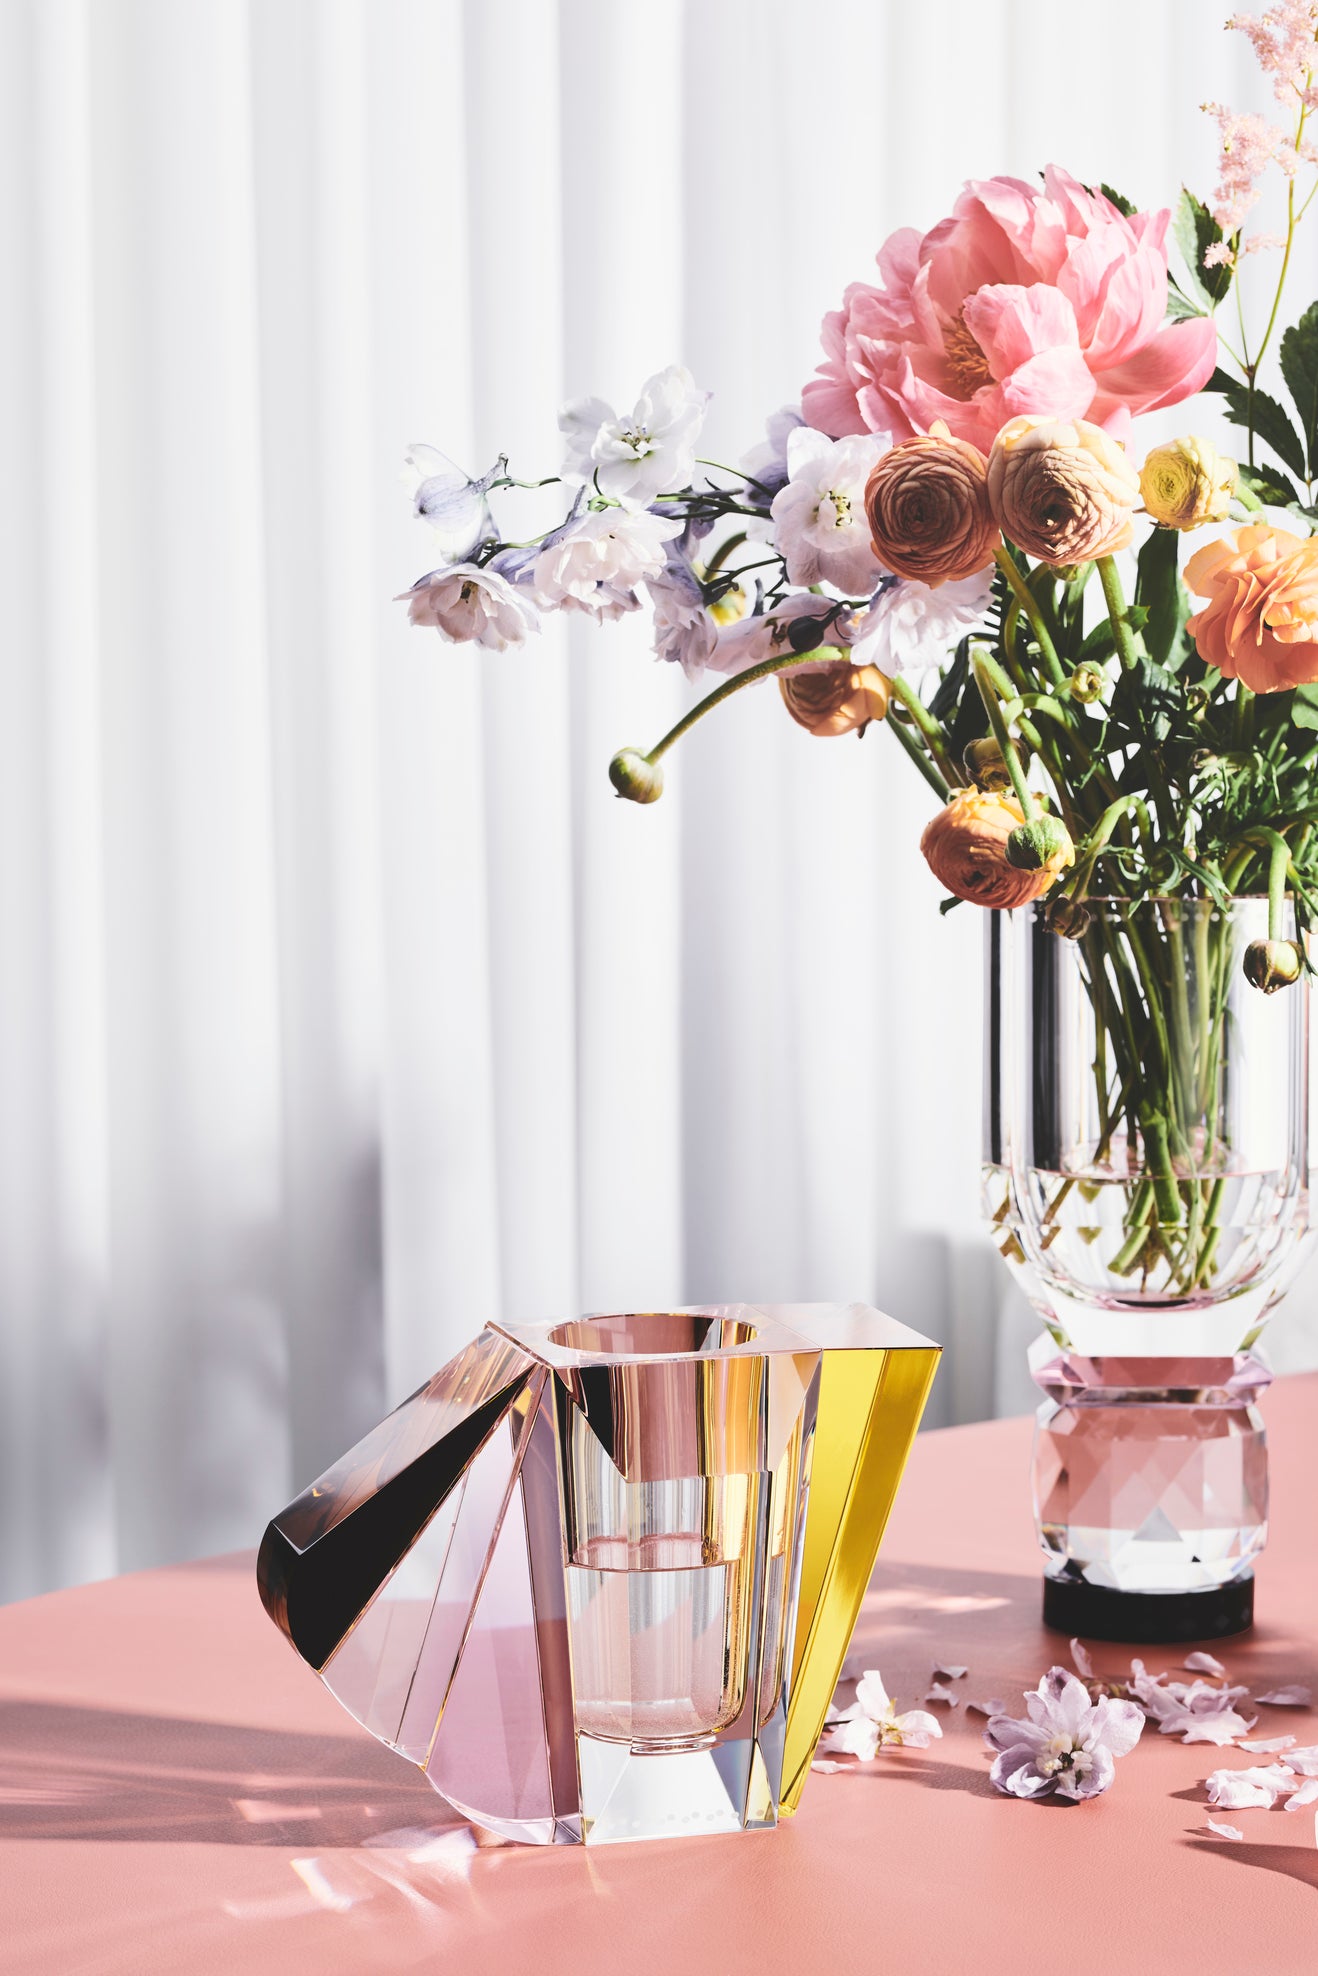 Opsætning af vaser i klar, brun, gul og lyserød krystal med blomster i samt opsats/skål med frugter, på bord med koralfarvet dug.